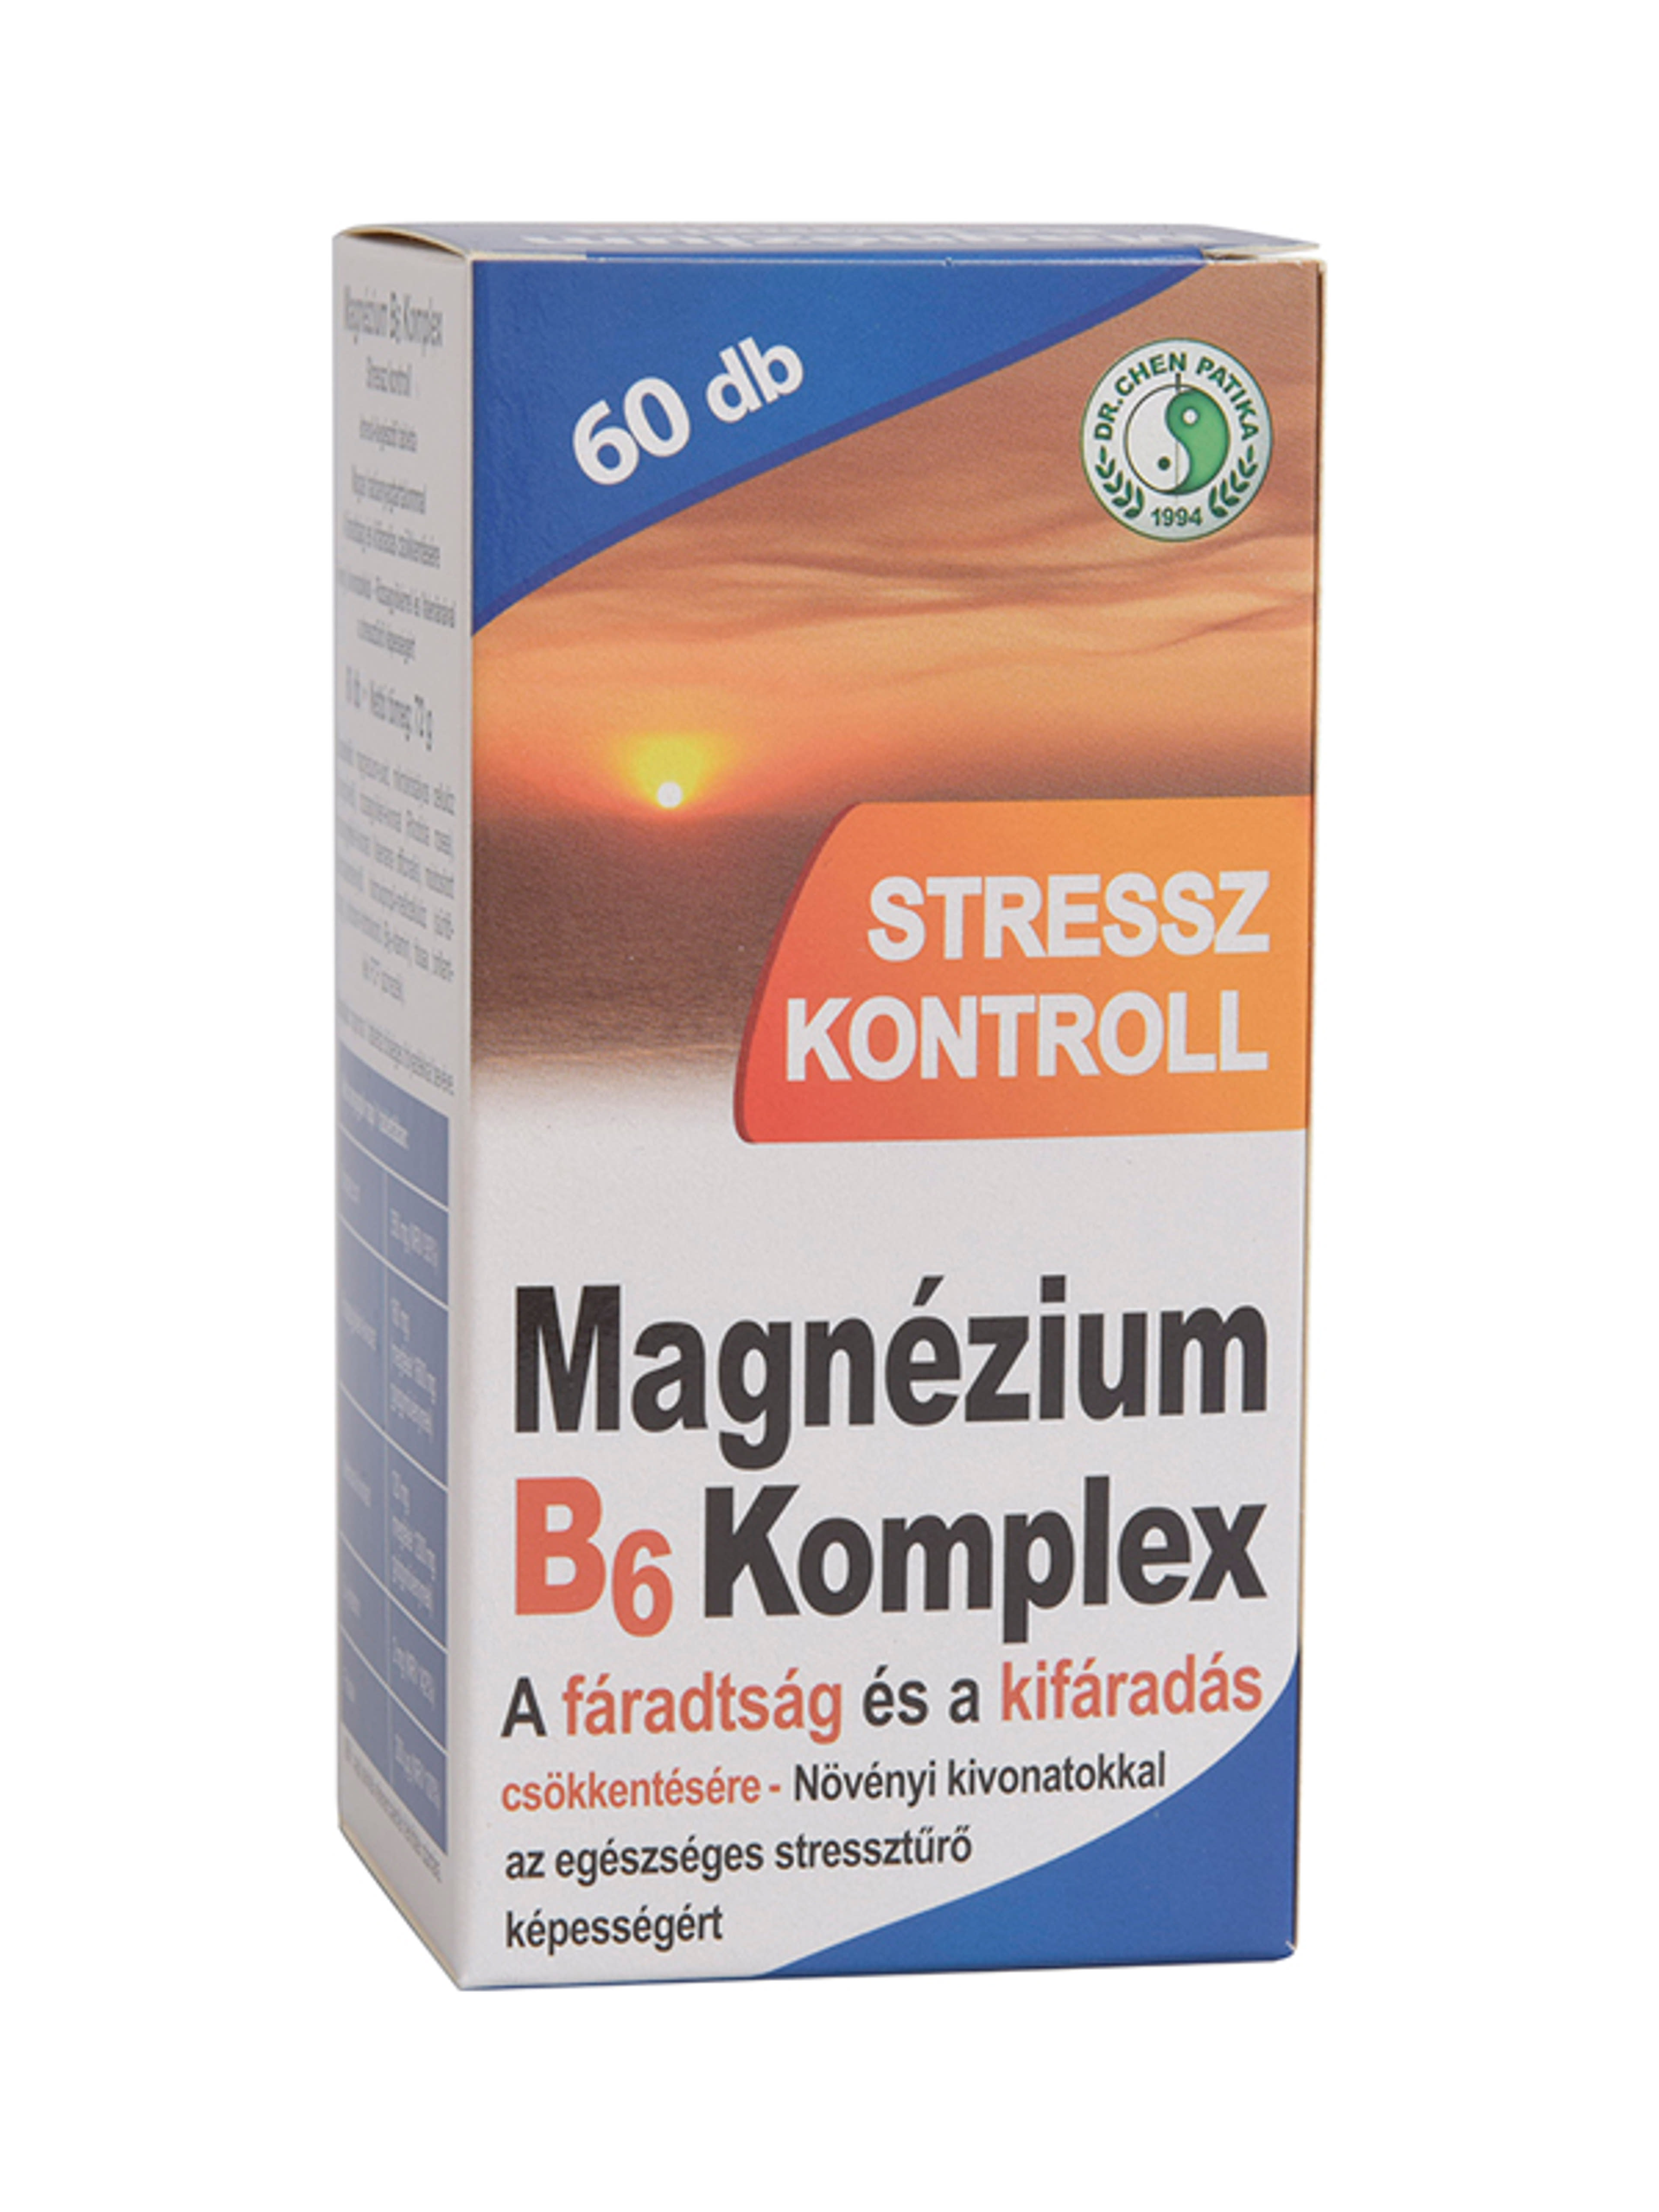 Dr.Chen Patika magnesium B6 komplex stressz tabletta - 60 db-1